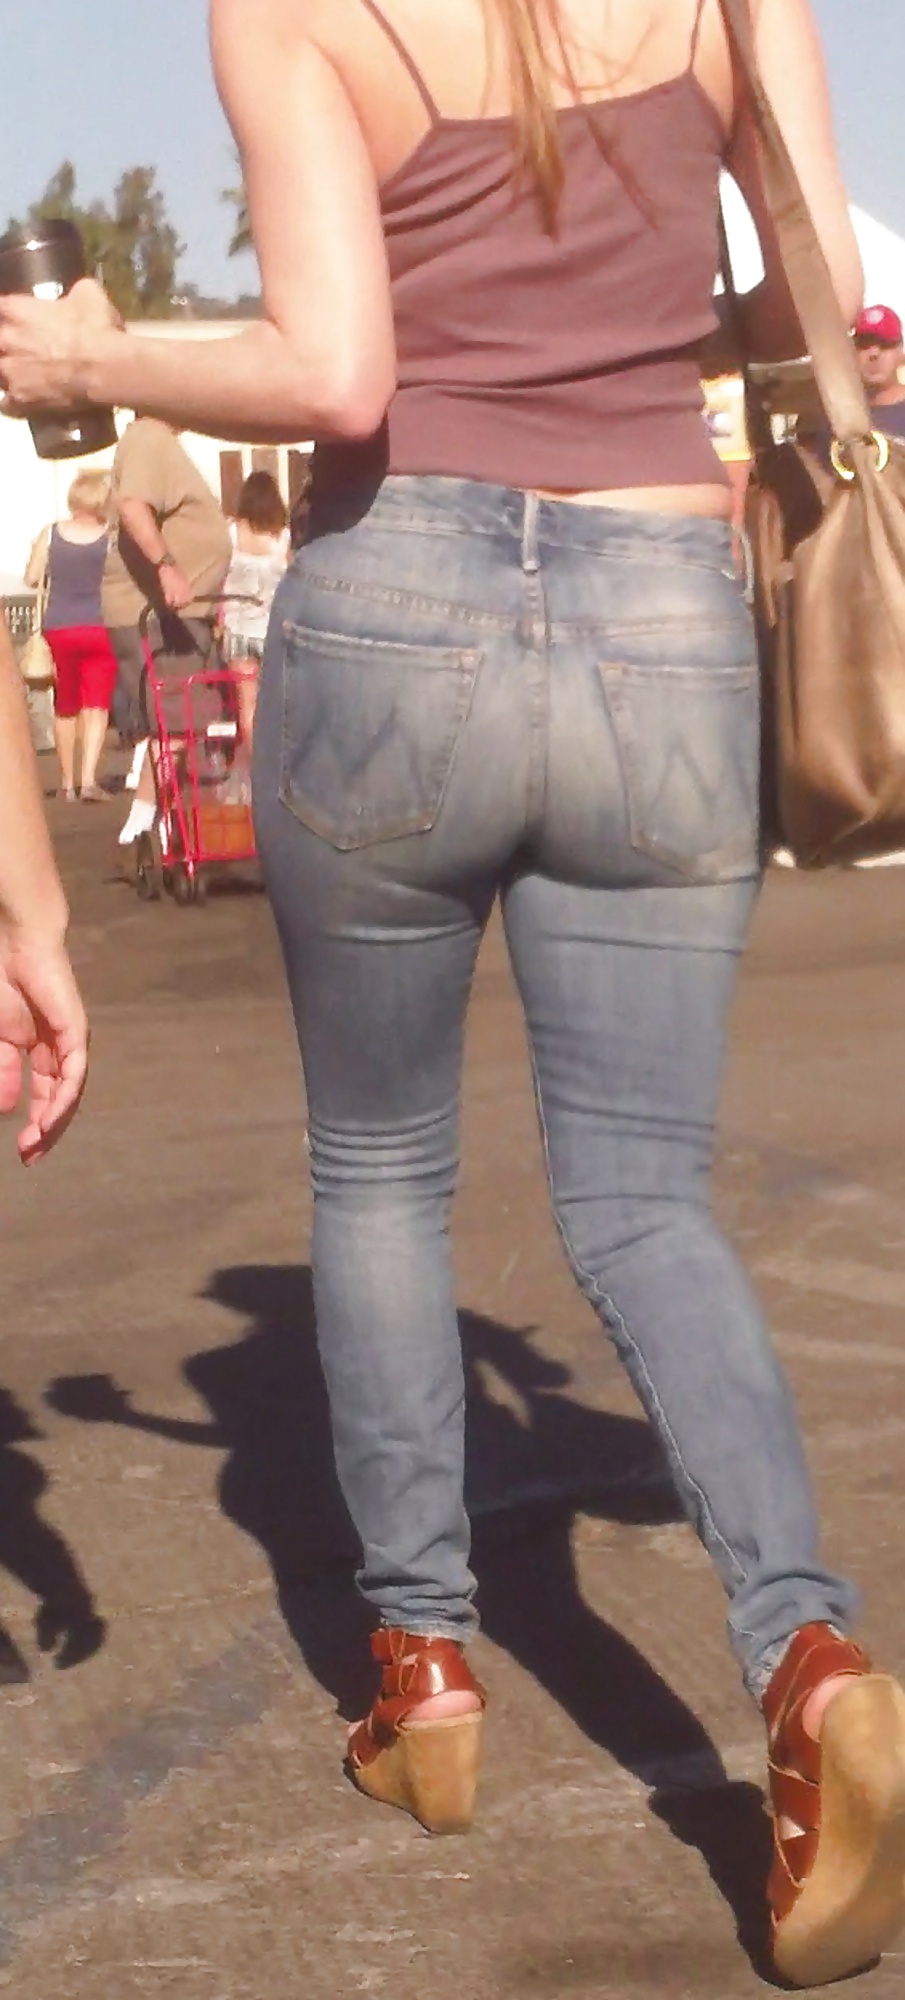 Popular teen girls ass & butt in jeans Part 6 #32009752